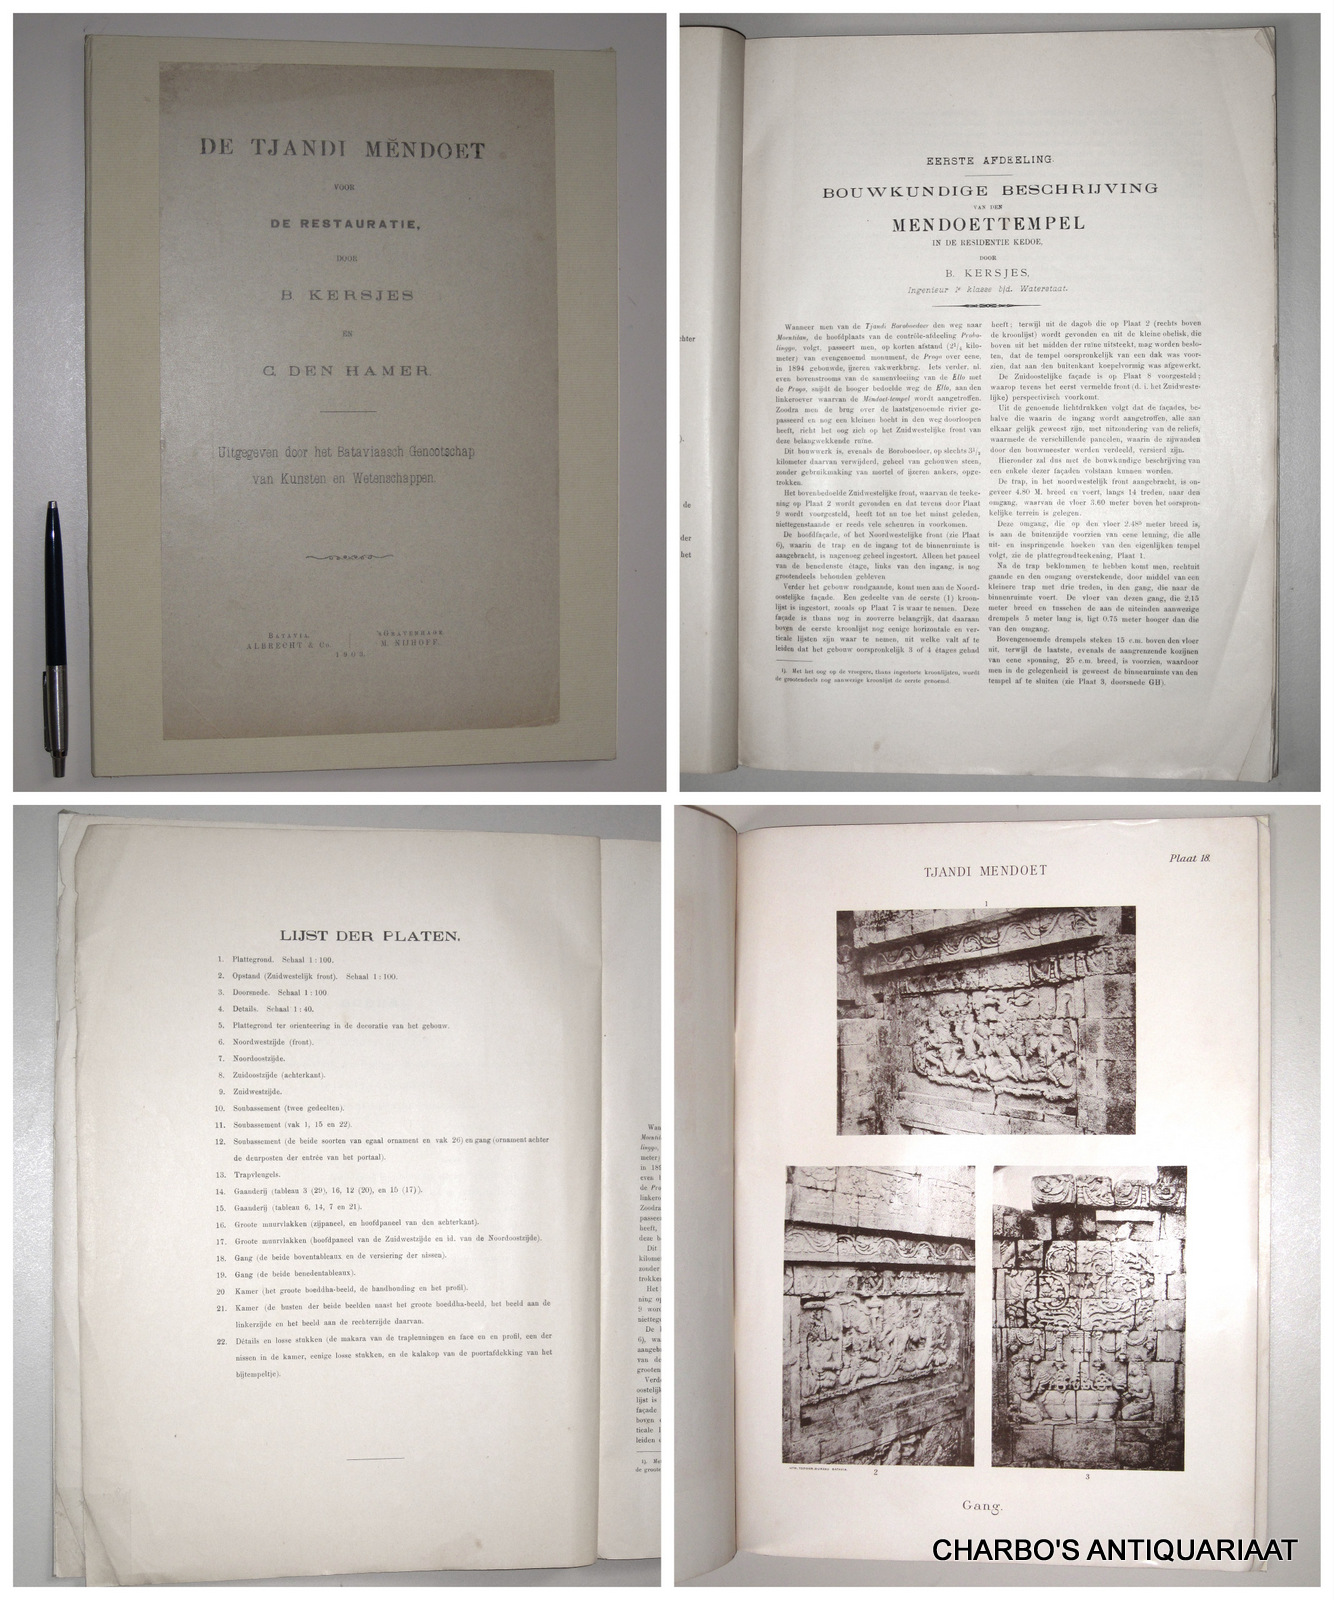 KERSJES, B. & C. DEN HAMER, -  De Tjandi Mendoet voor de restauratie. Uitgegeven door het Bataviaasch Genootschap van Kunsten en Wetenschappen.